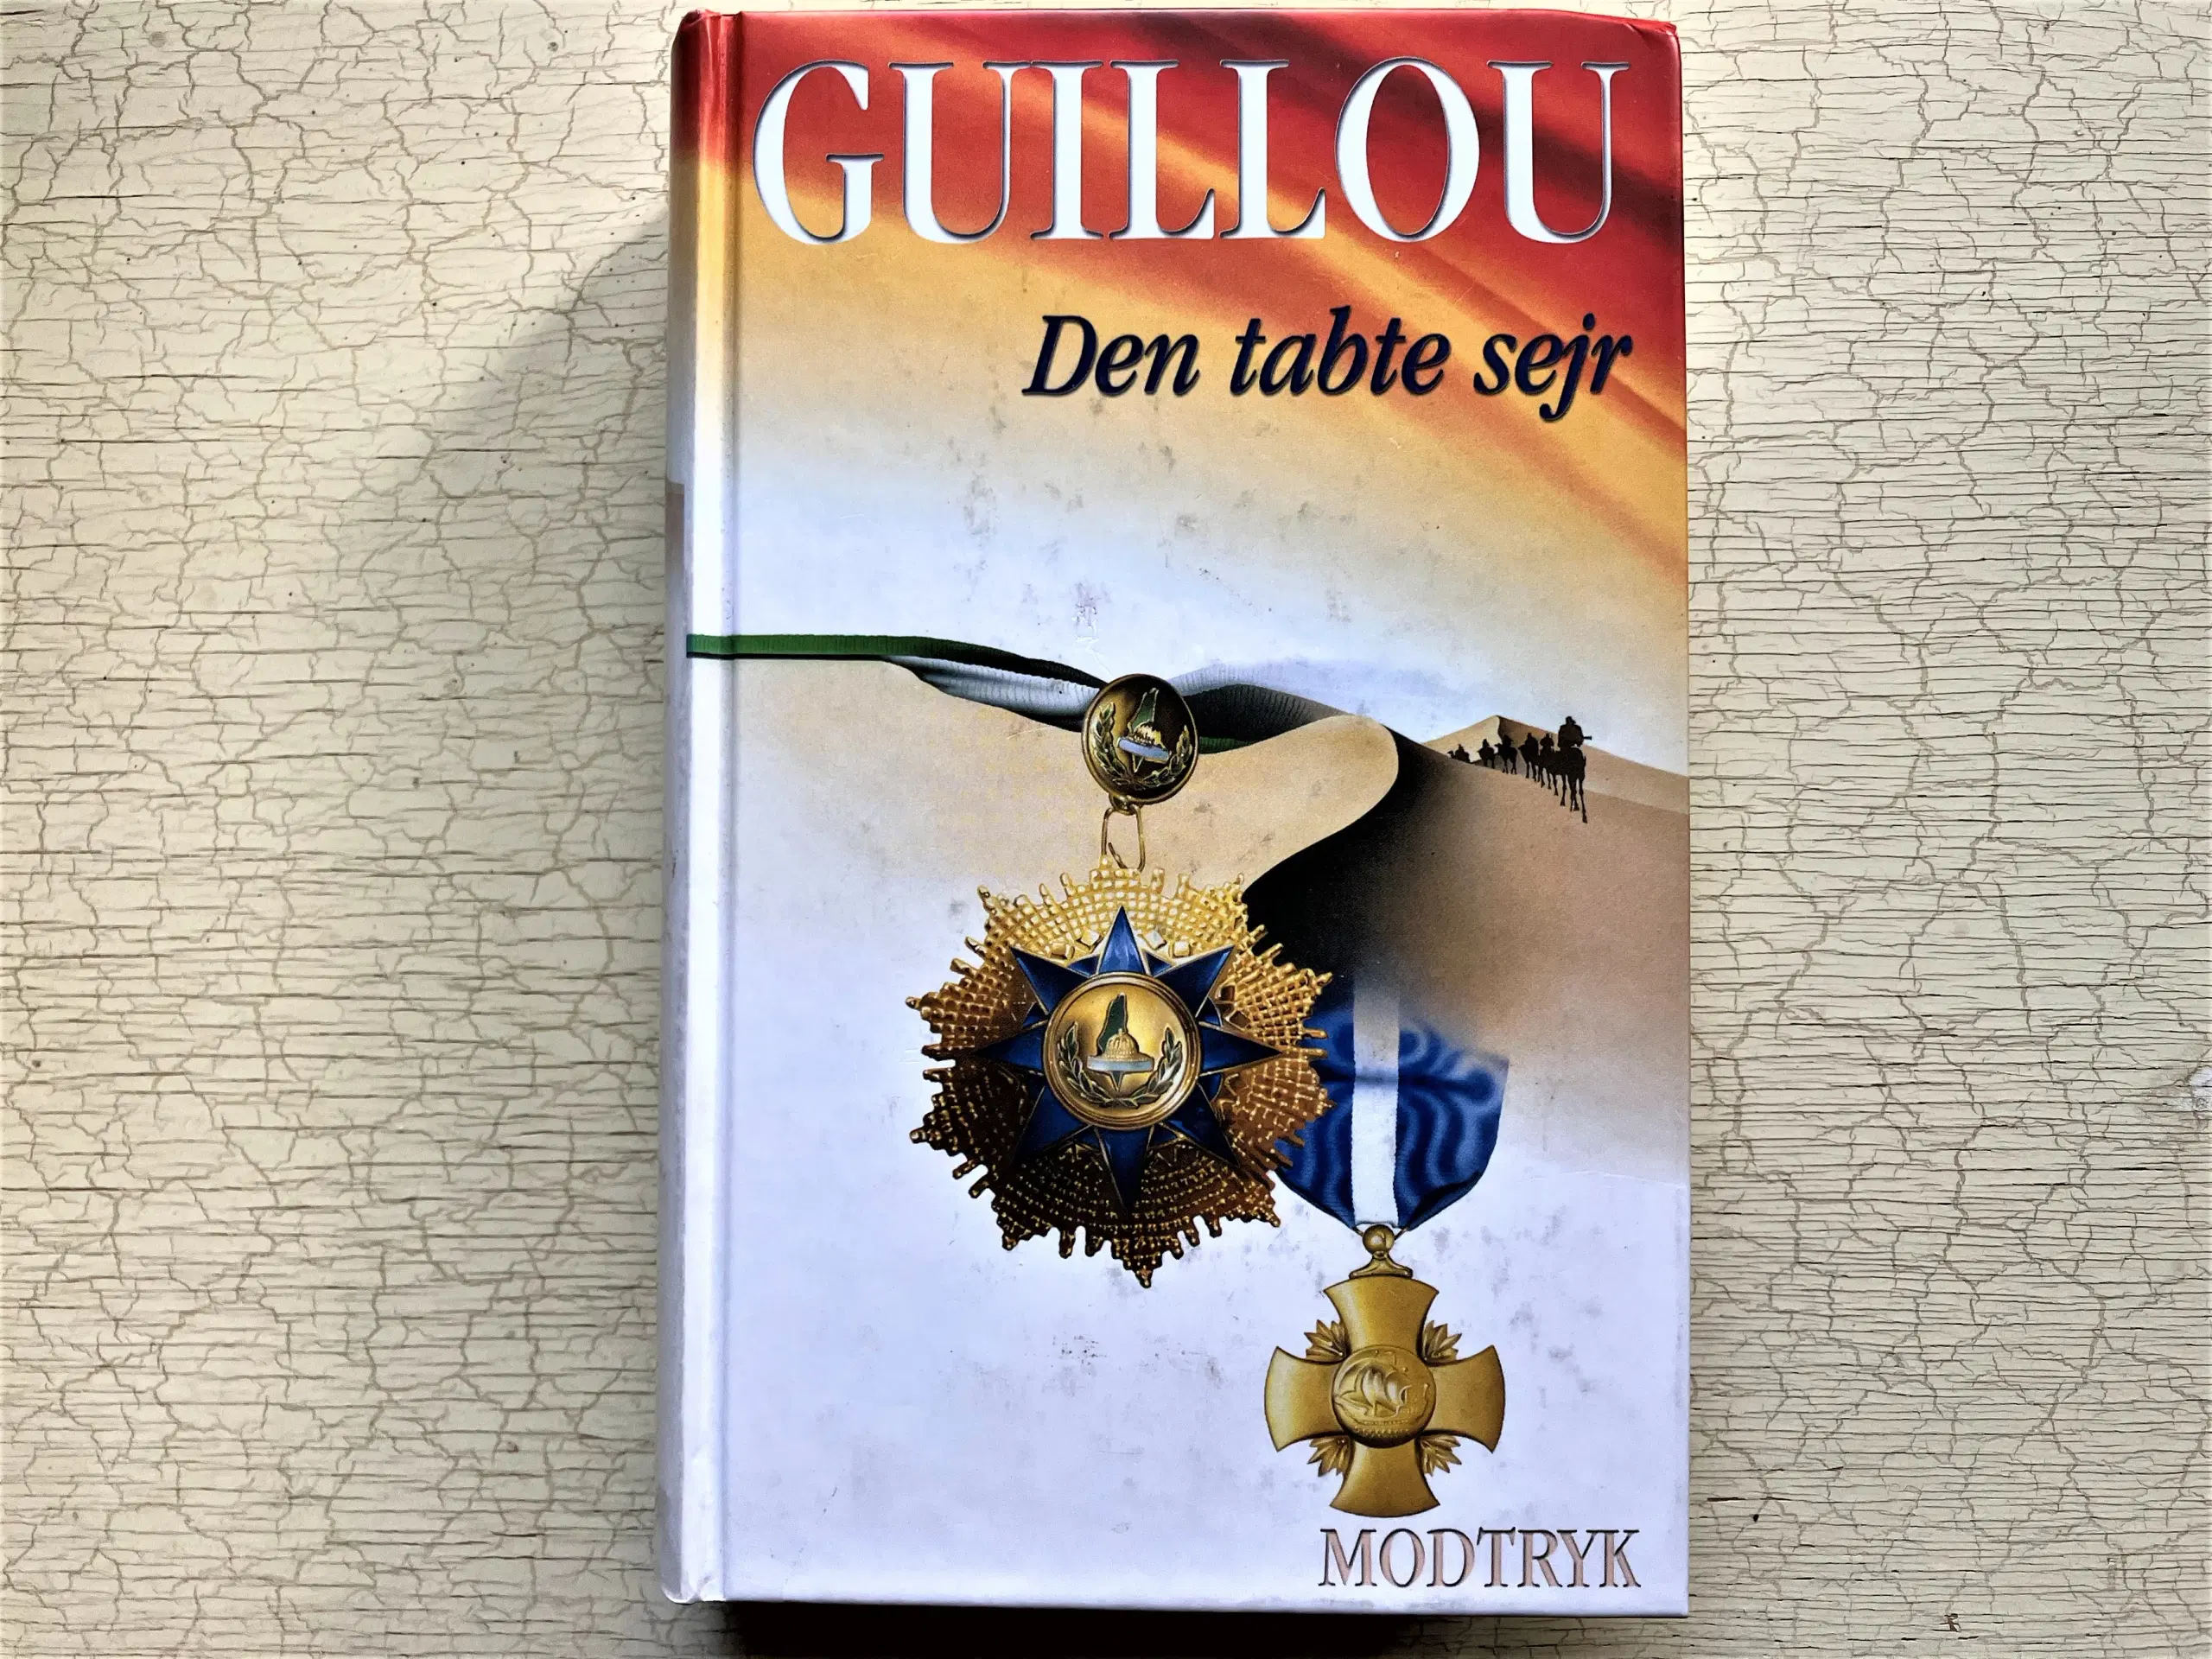 TILBUD: 17 bøger af Jan Guillou